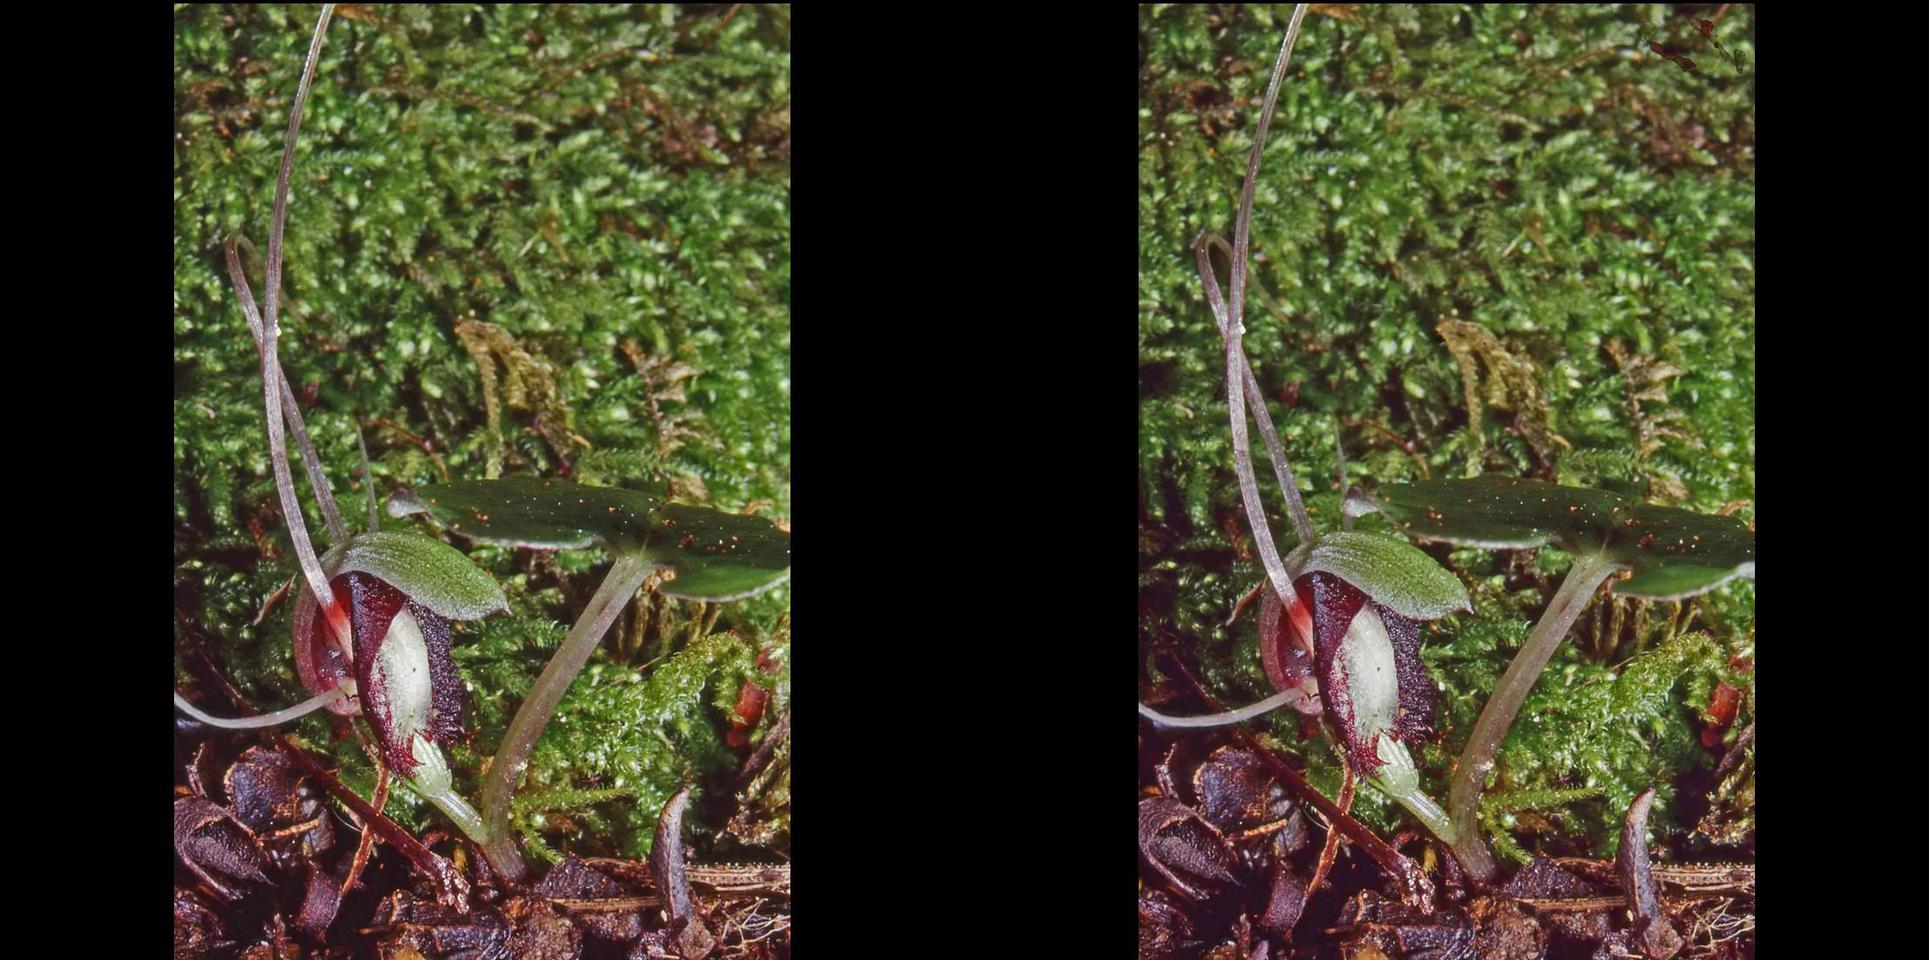 Corybas sanctigeorgeanus